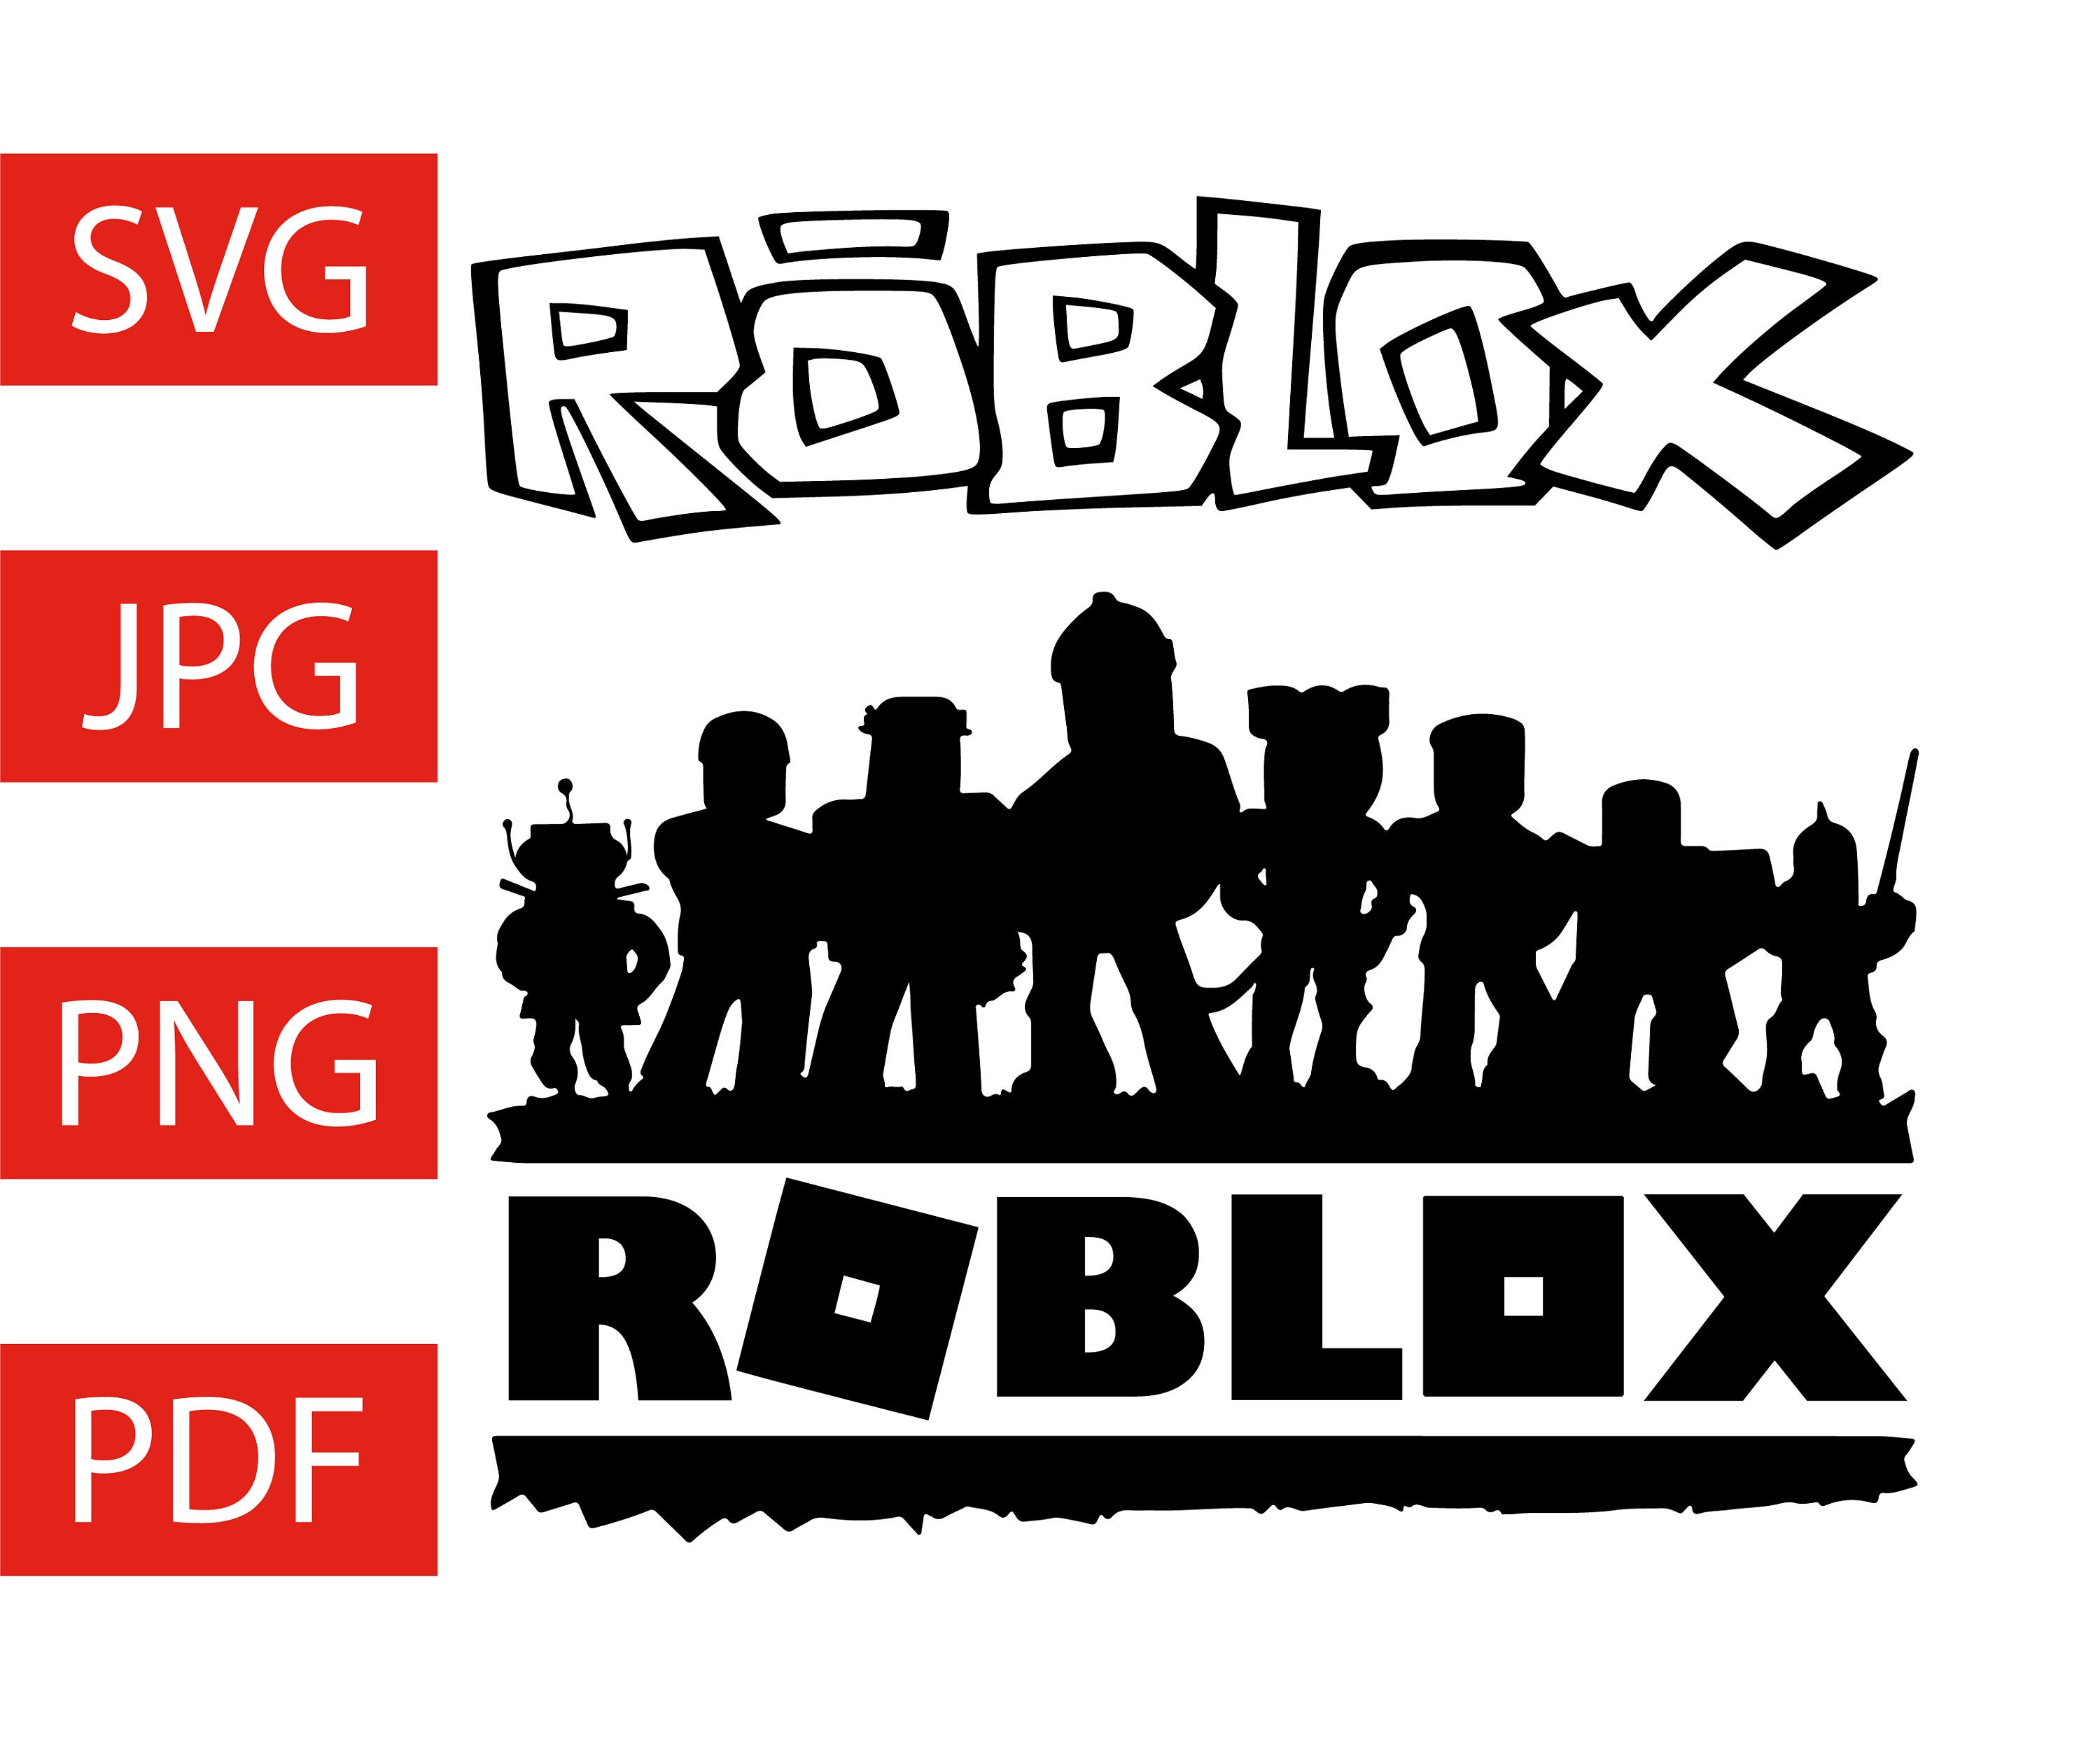 Download Roblox Large Squad/Team Logo Bundle Svg Jpg Png Pdf Vector | Etsy